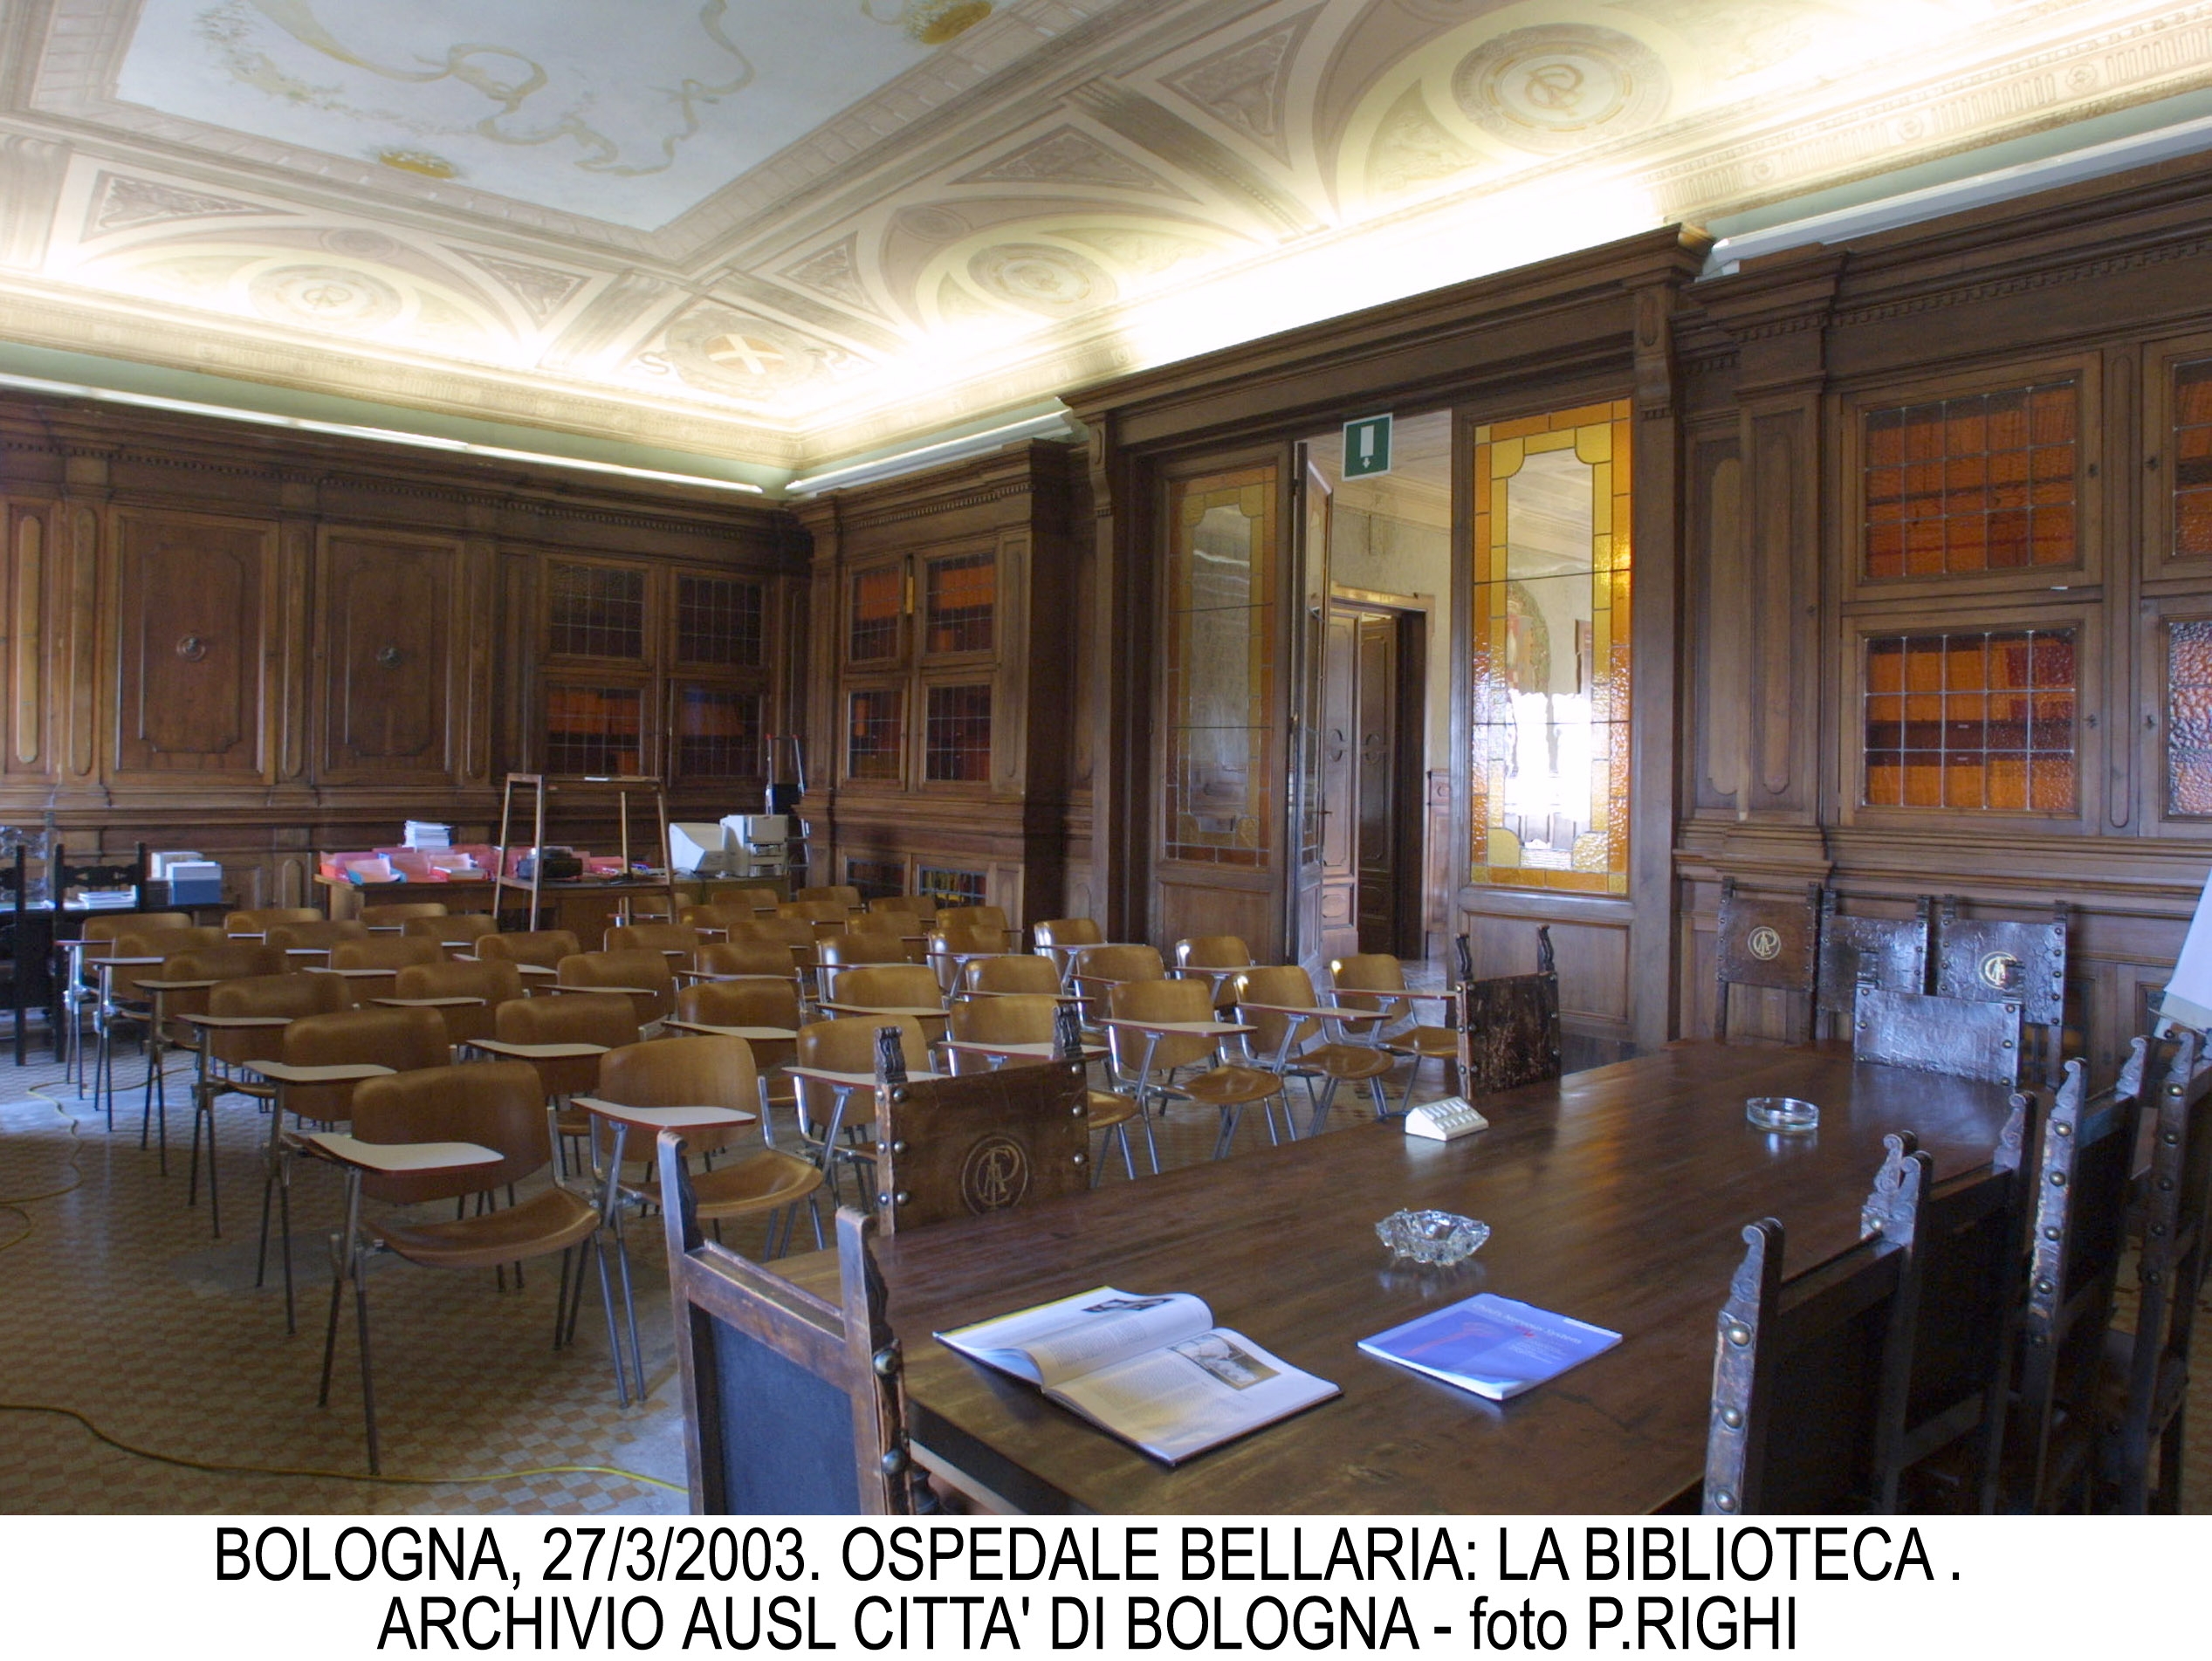 Ospedale Bellaria, la biblioteca realizzata dal marchese Pizzardi 